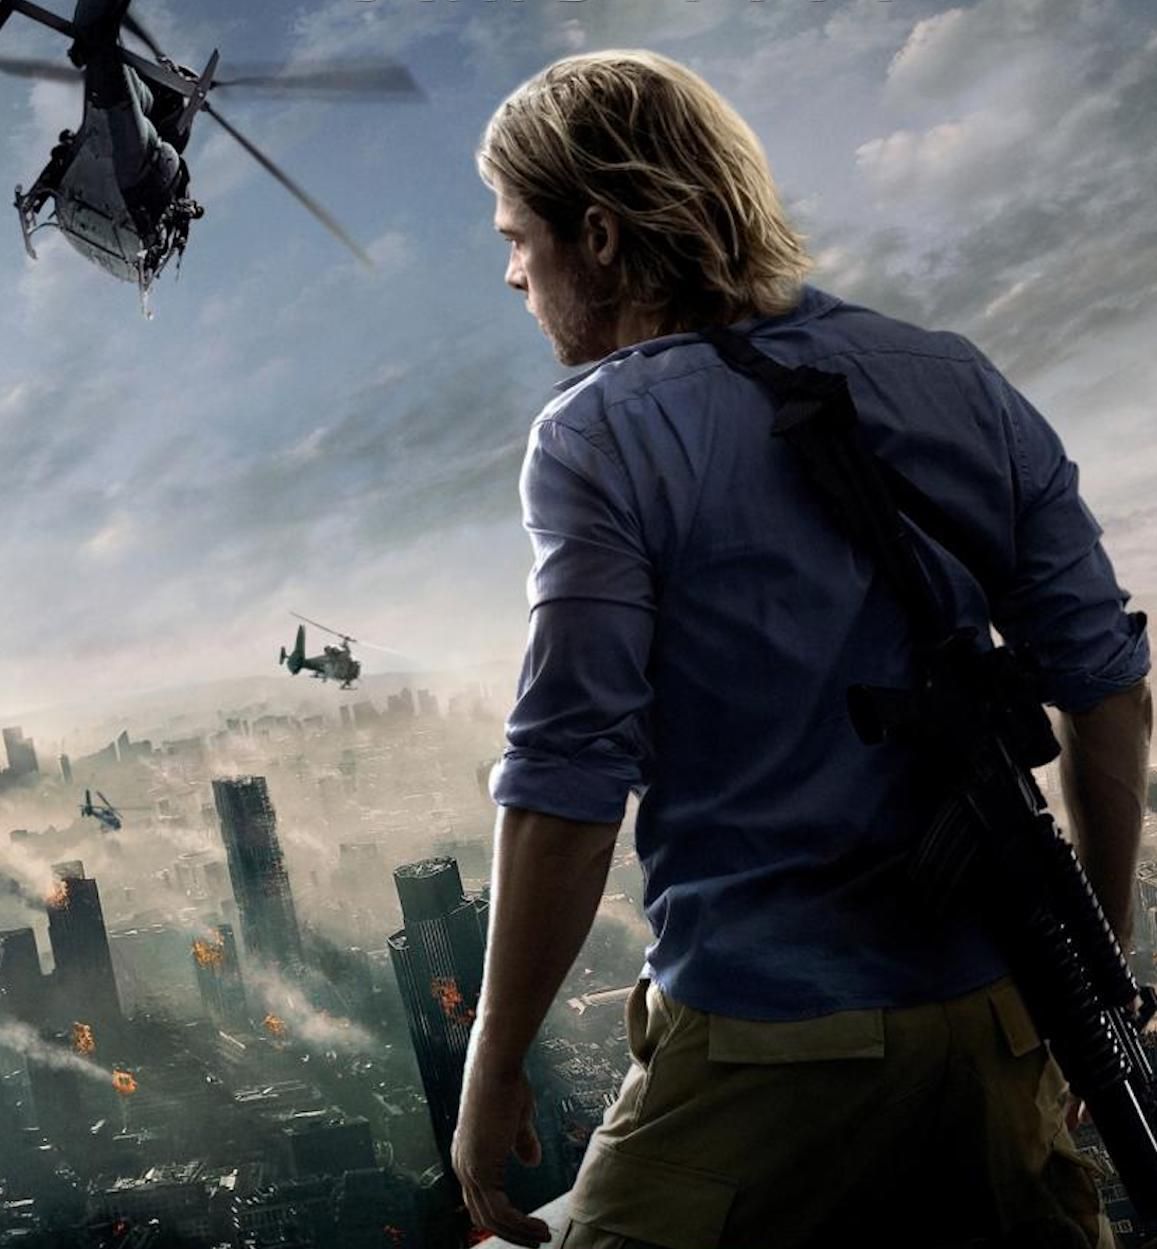 Brad Pitt poster for World War Z movie